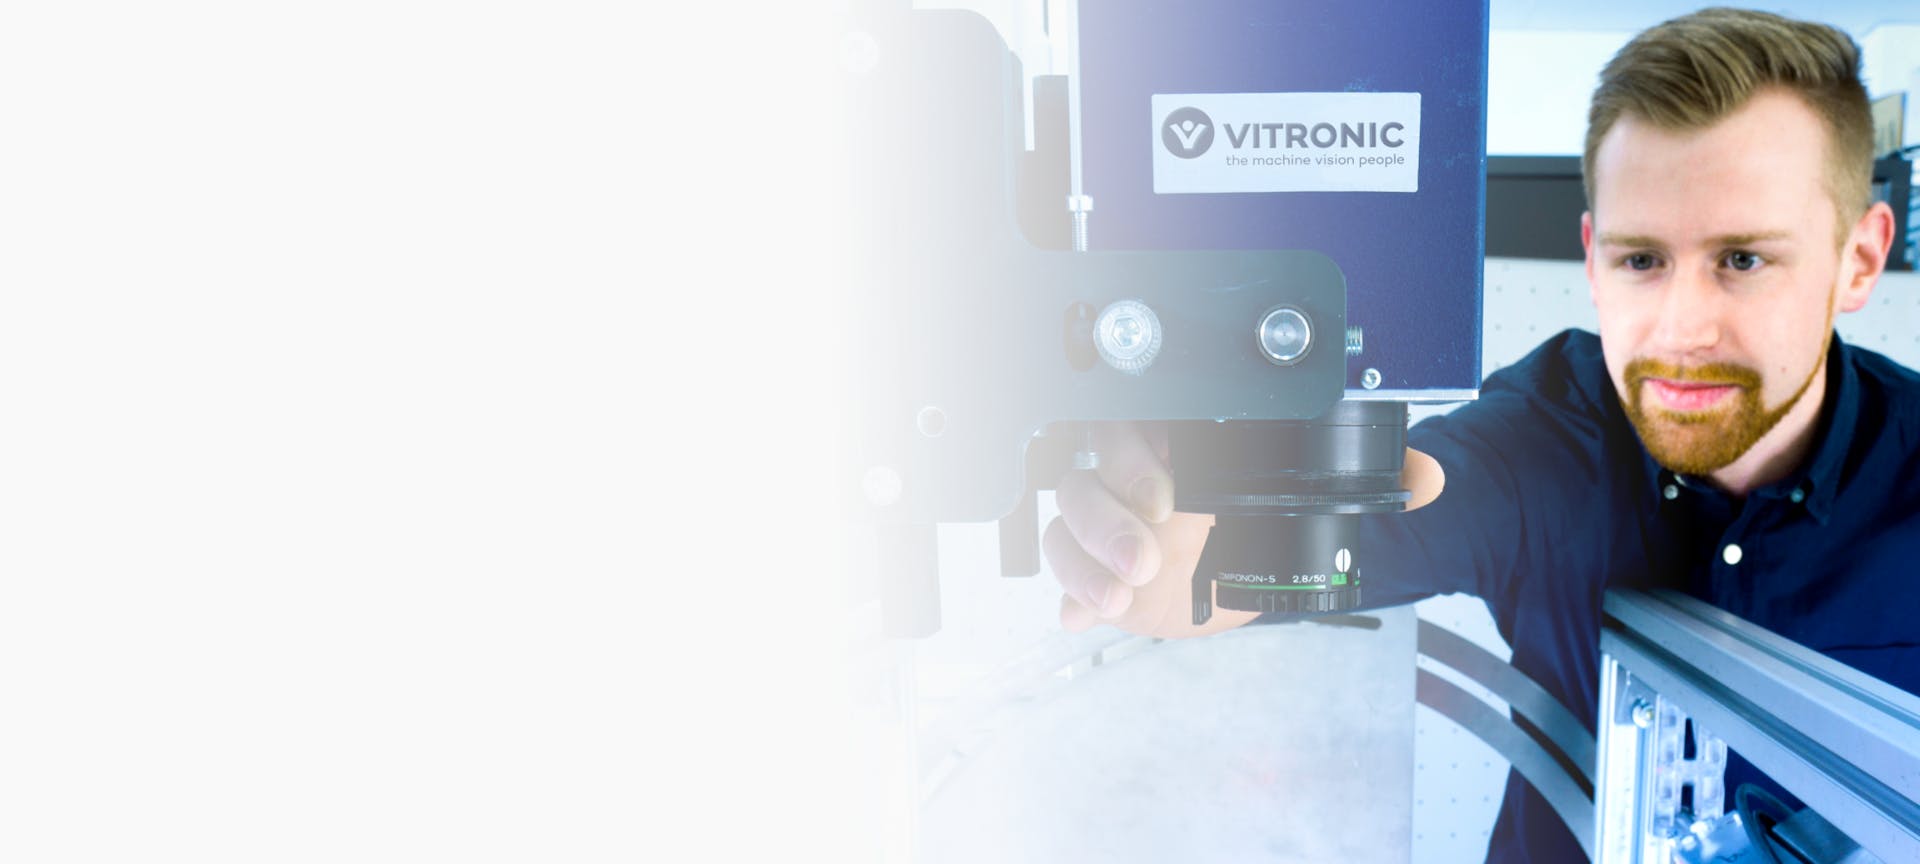 VITRONIC Dr.-Ing. Stein Bildverarbeitungssysteme GmbH